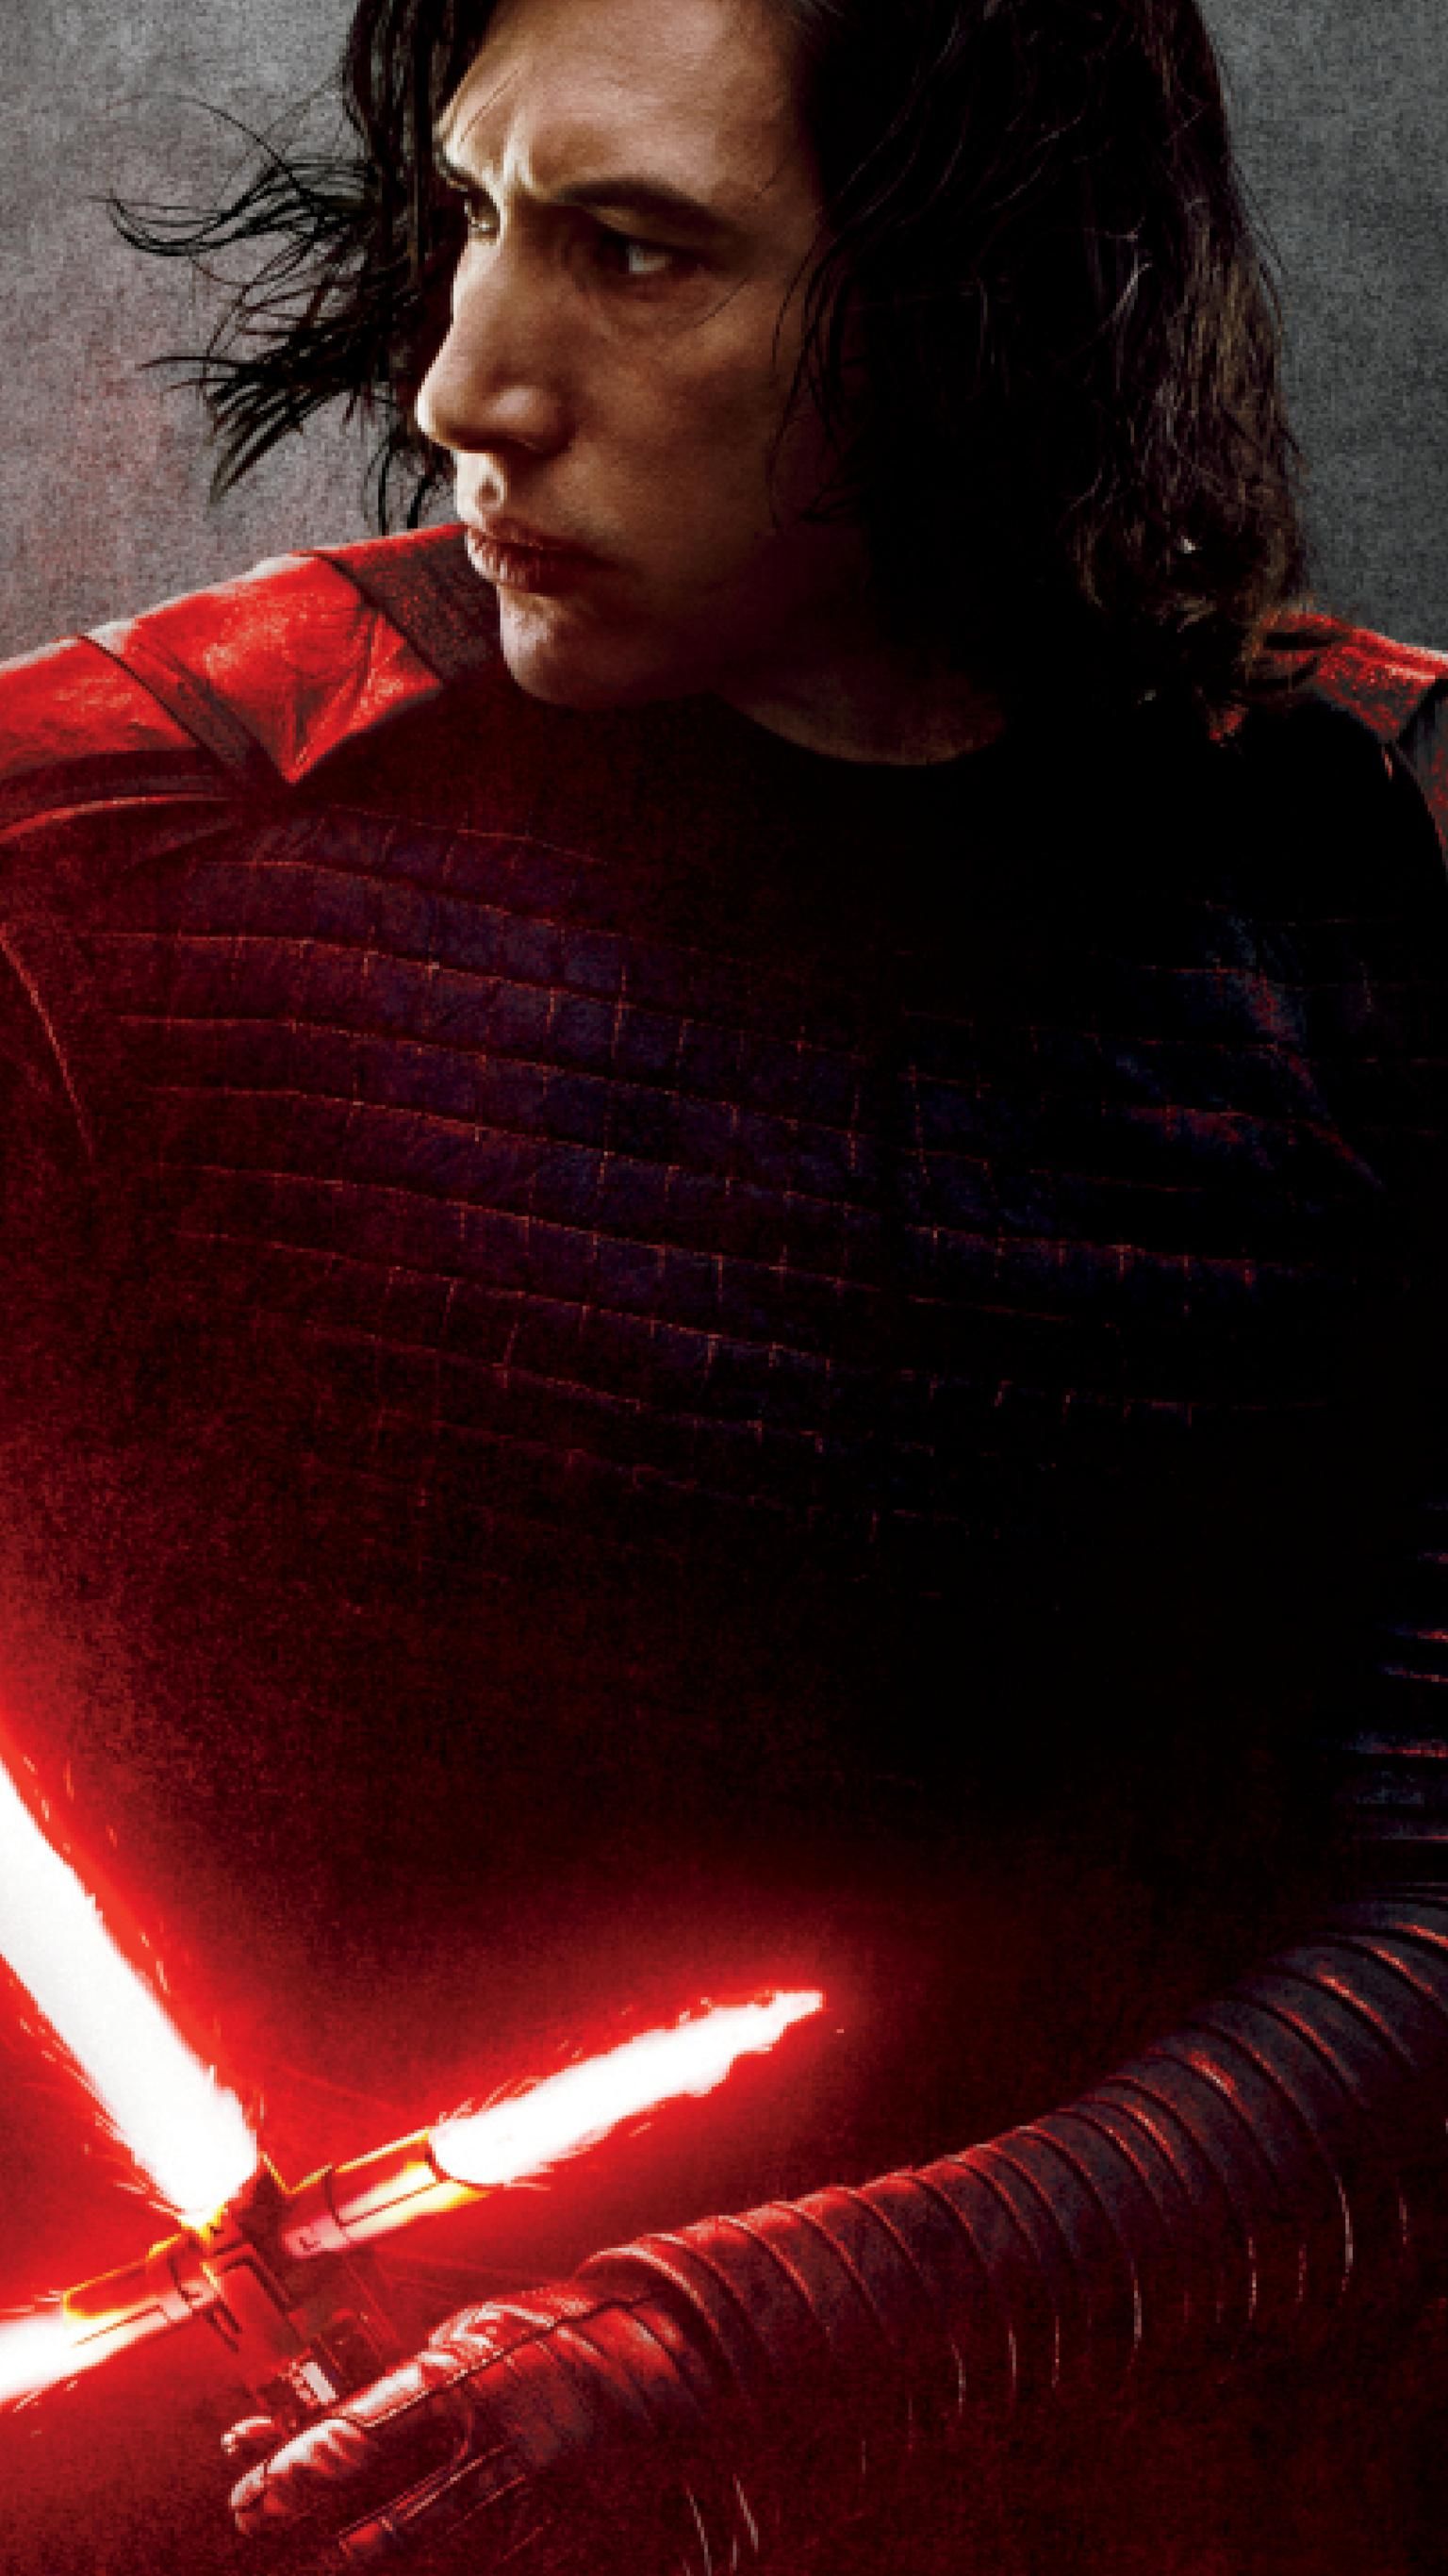 Star Wars Kylo Ren Last Jedi - HD Wallpaper 